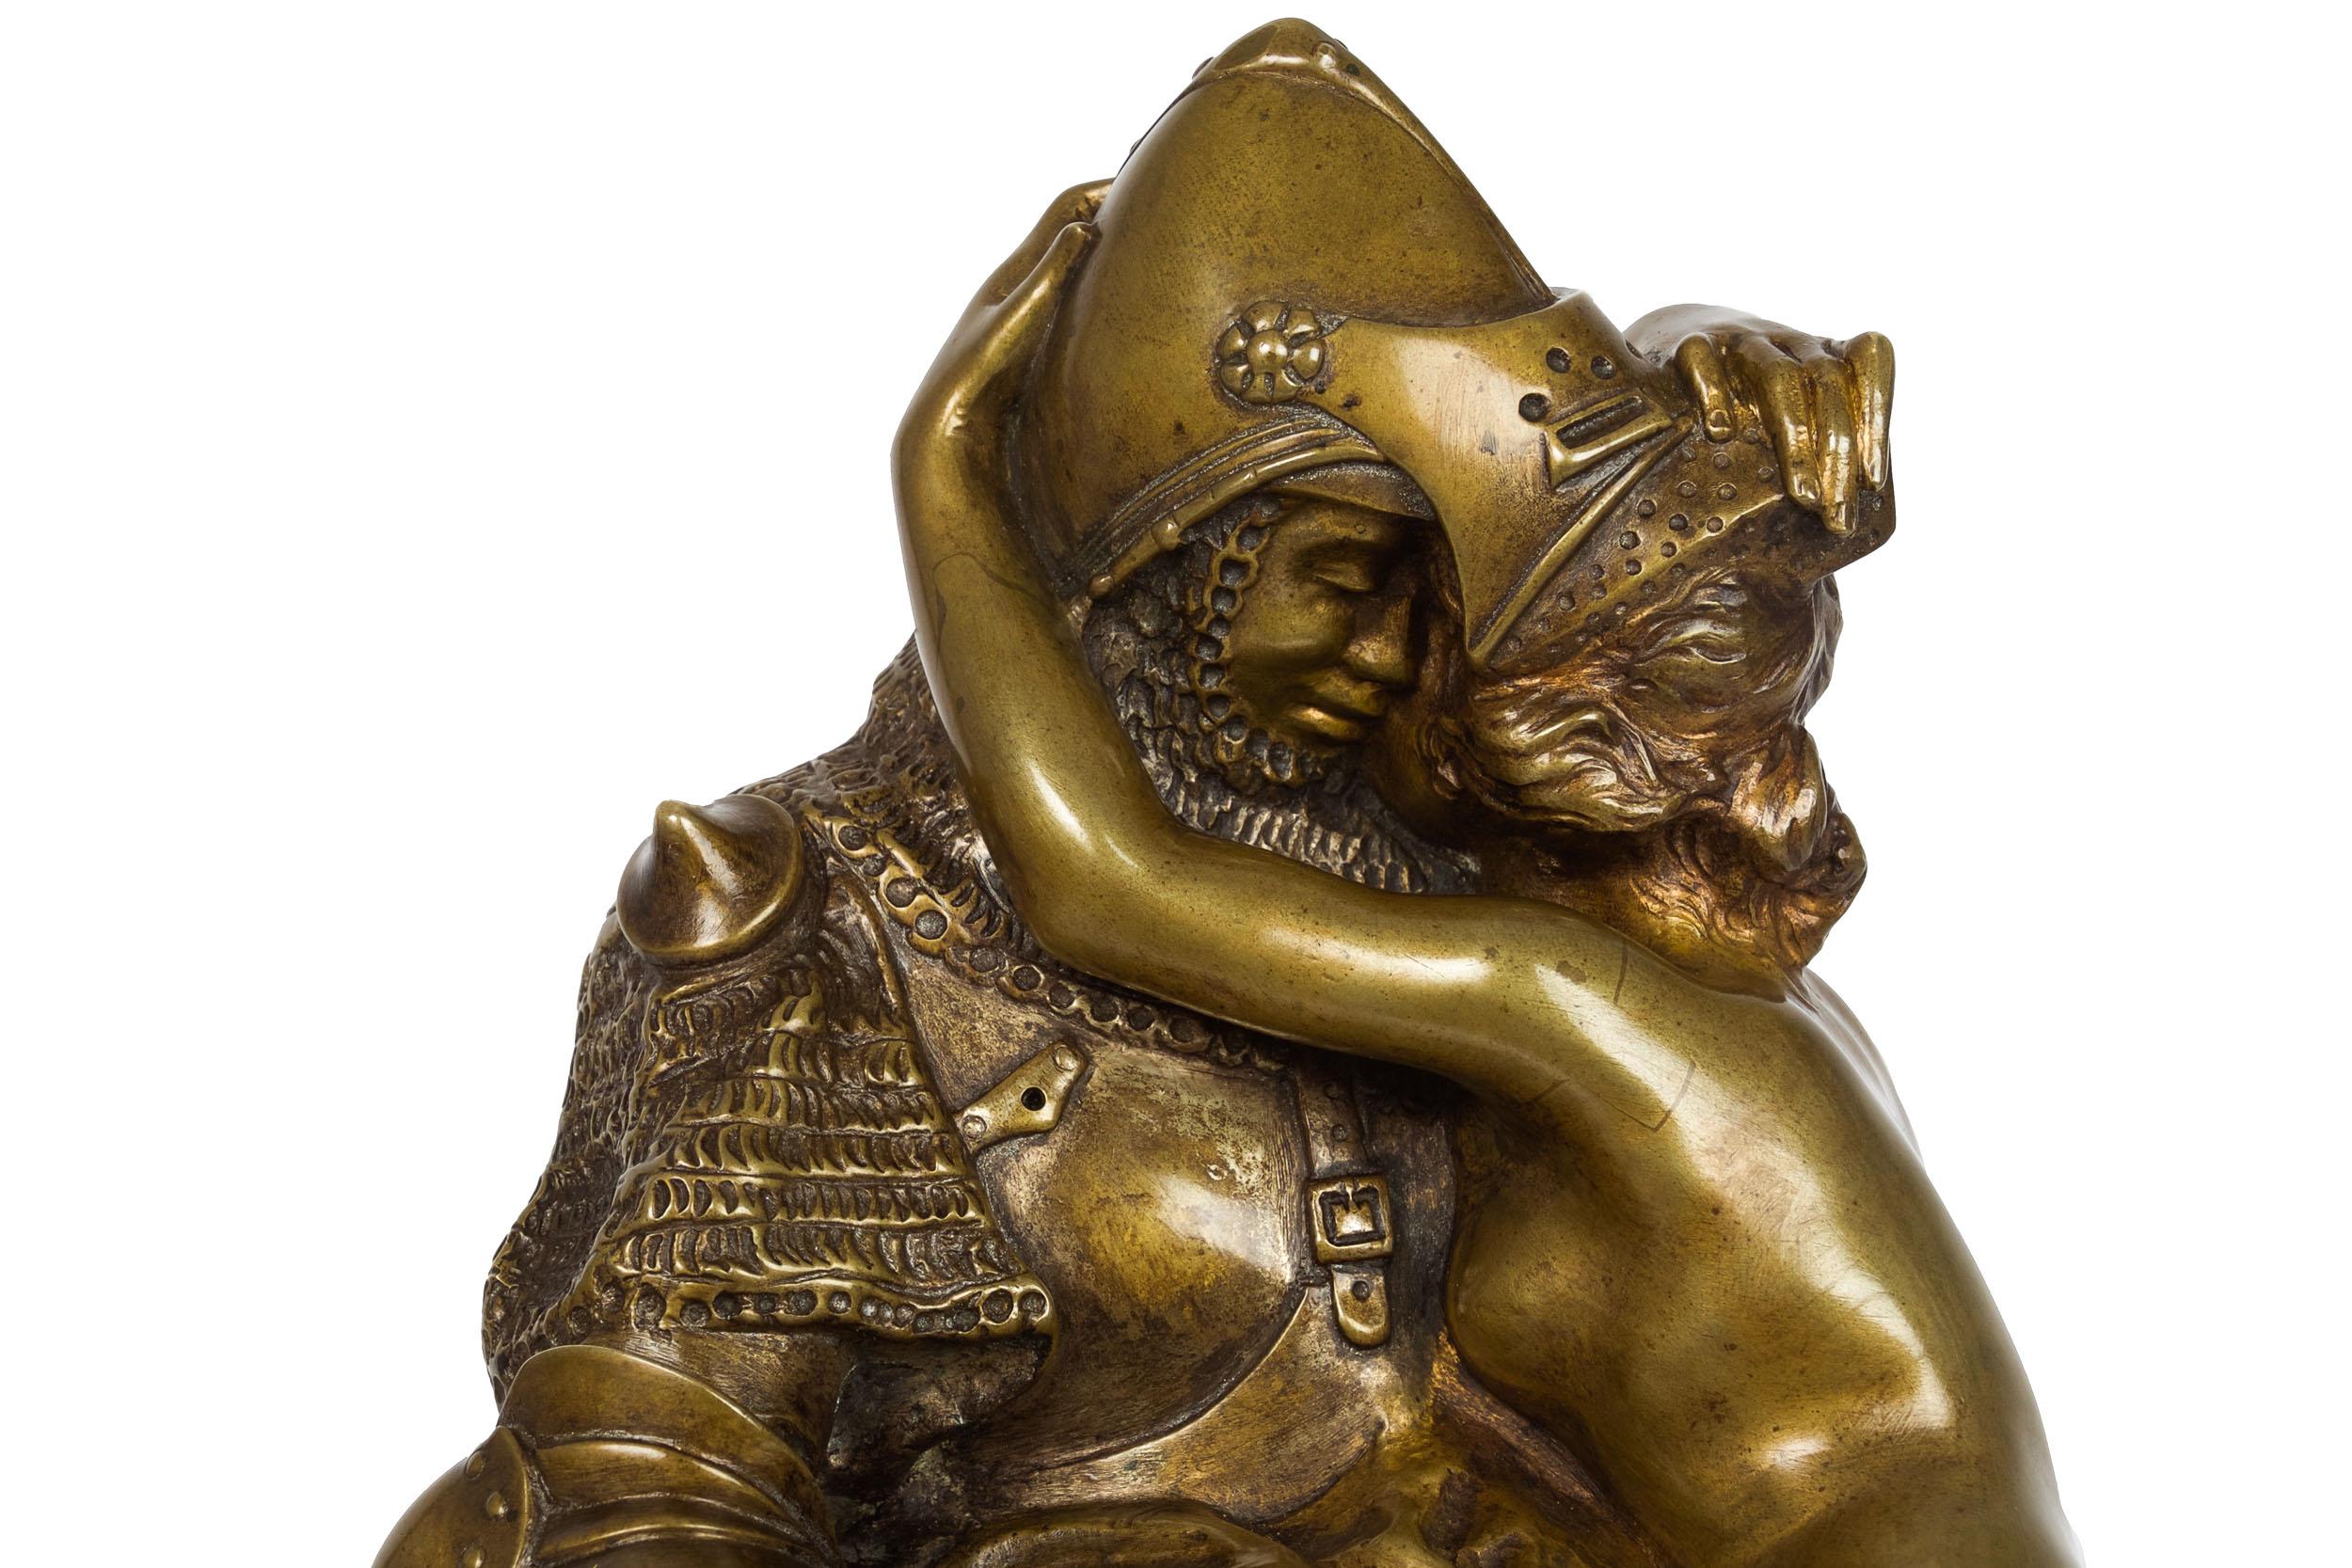 French Antique Art Nouveau Bronze Sculpture of Knight by François A. Clémencin For Sale 4